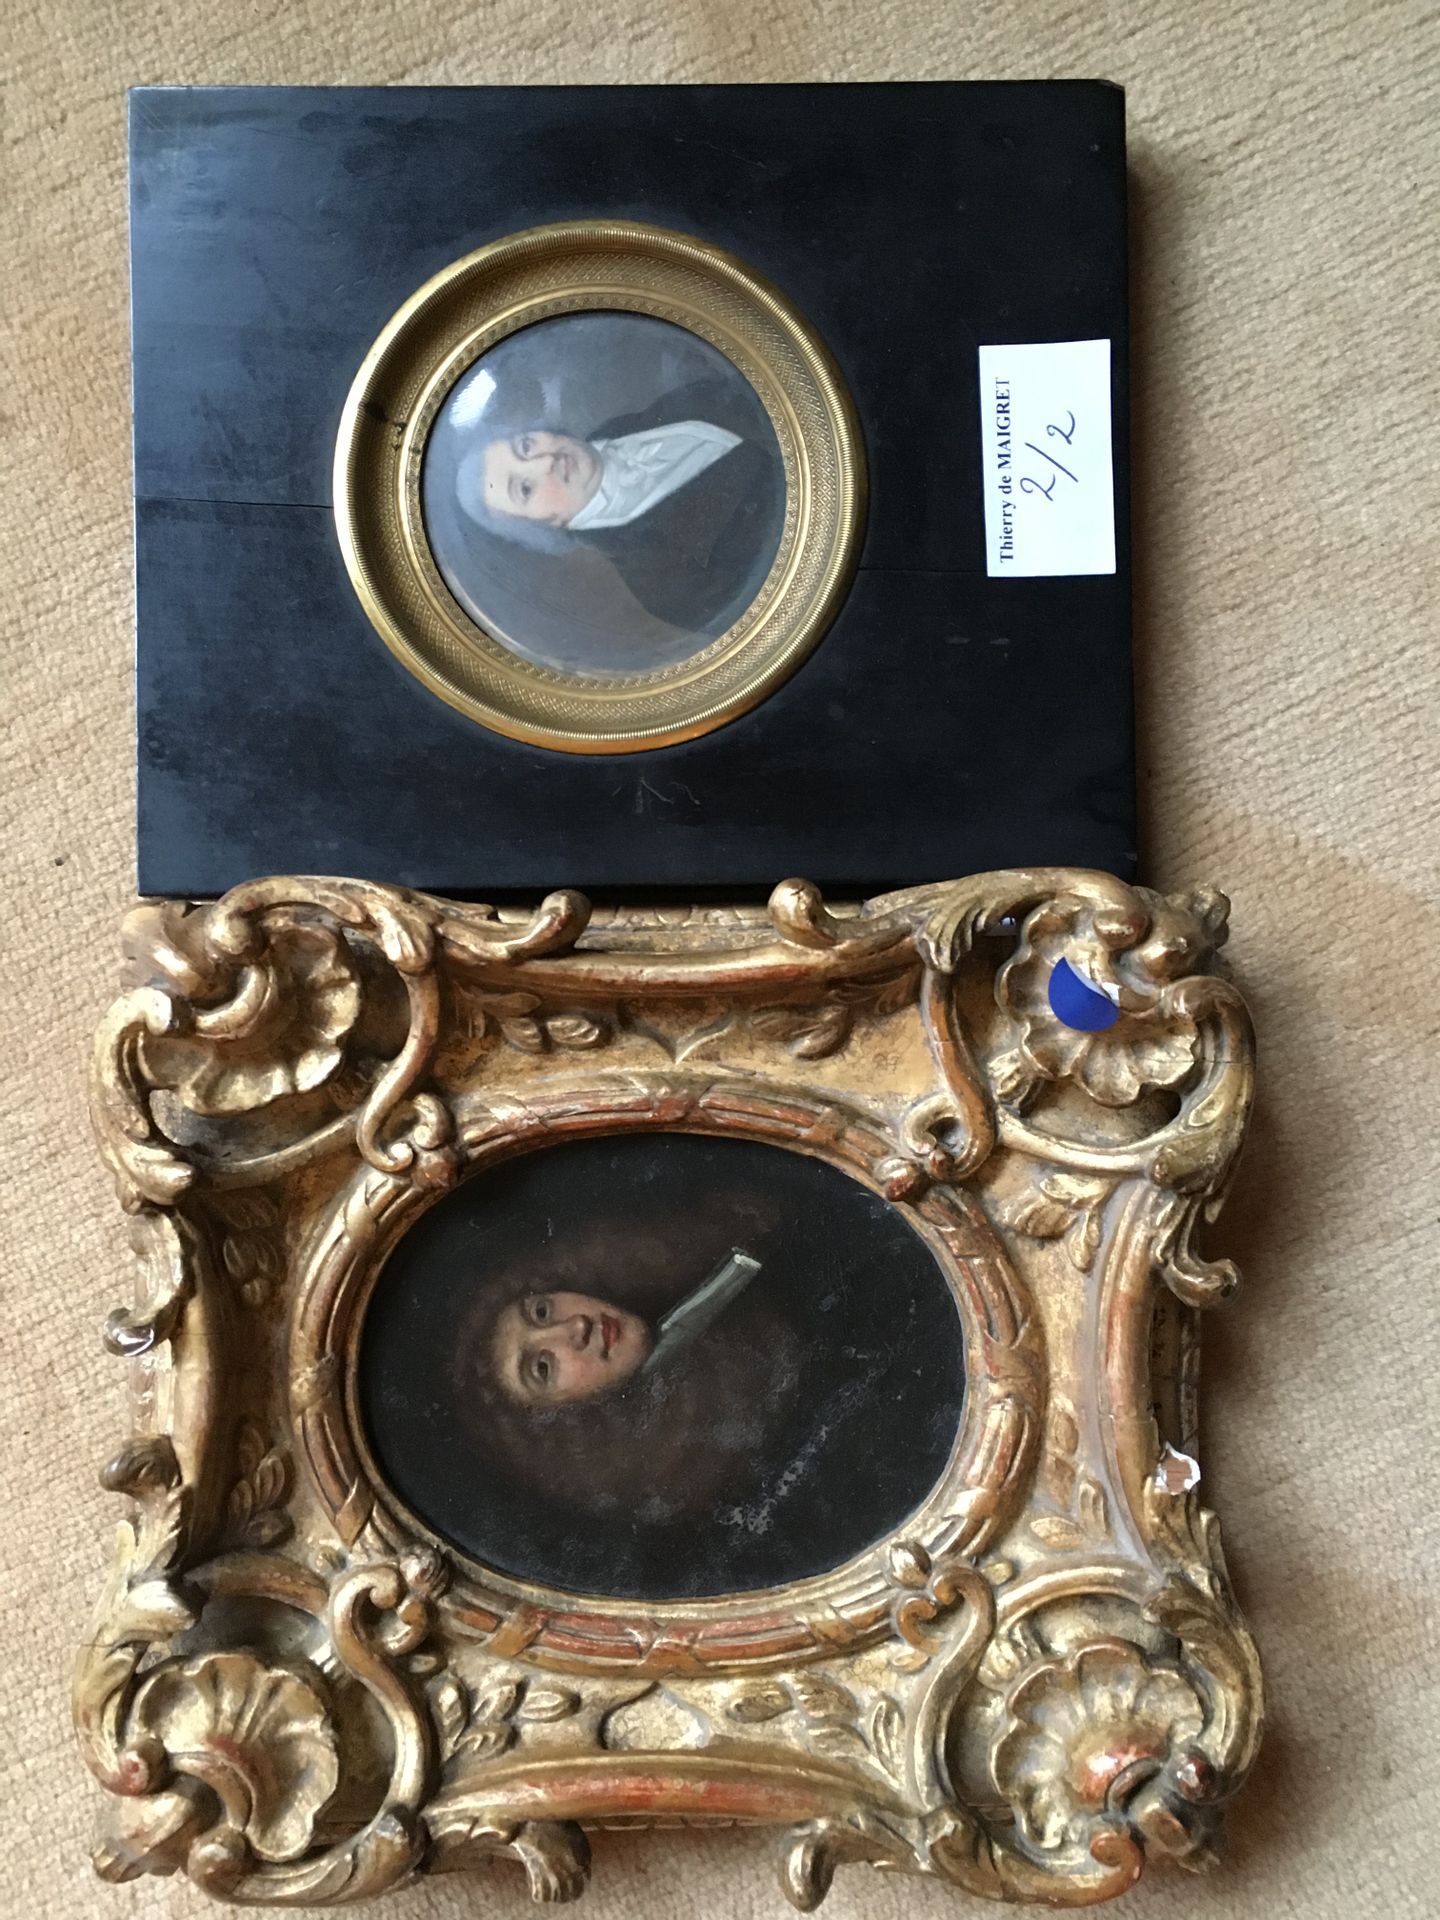 Null 微型圆形人像

結合：男人的肖像，小橢圓形面板，17世紀風格的框架。